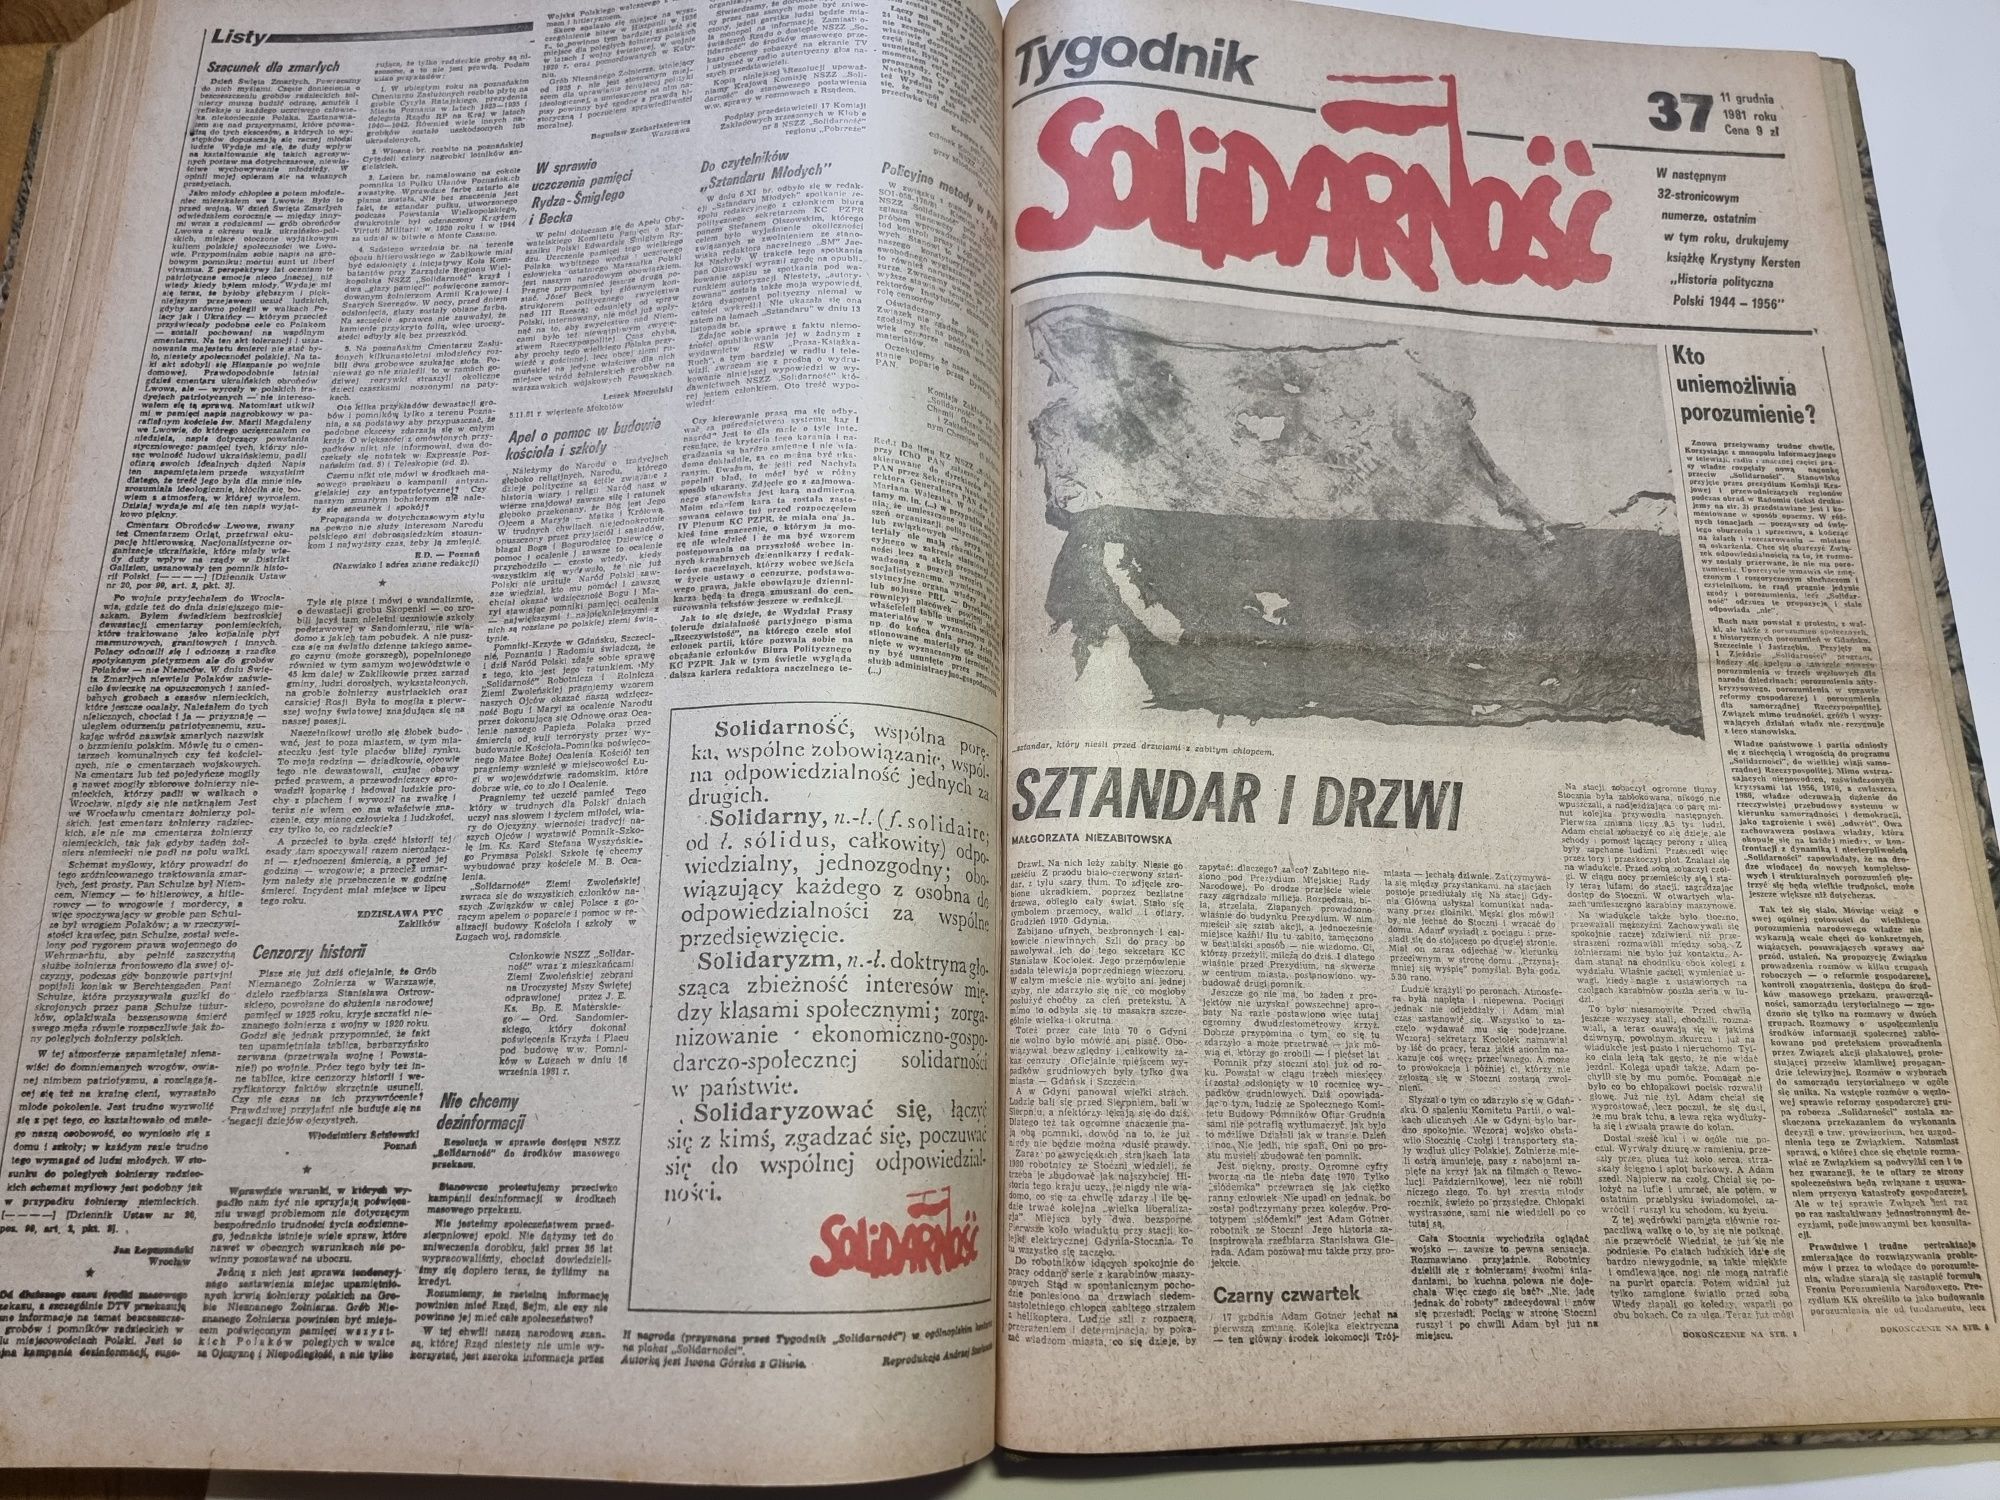 Tygodnik Solidarność rocznik 1981 oprawiony